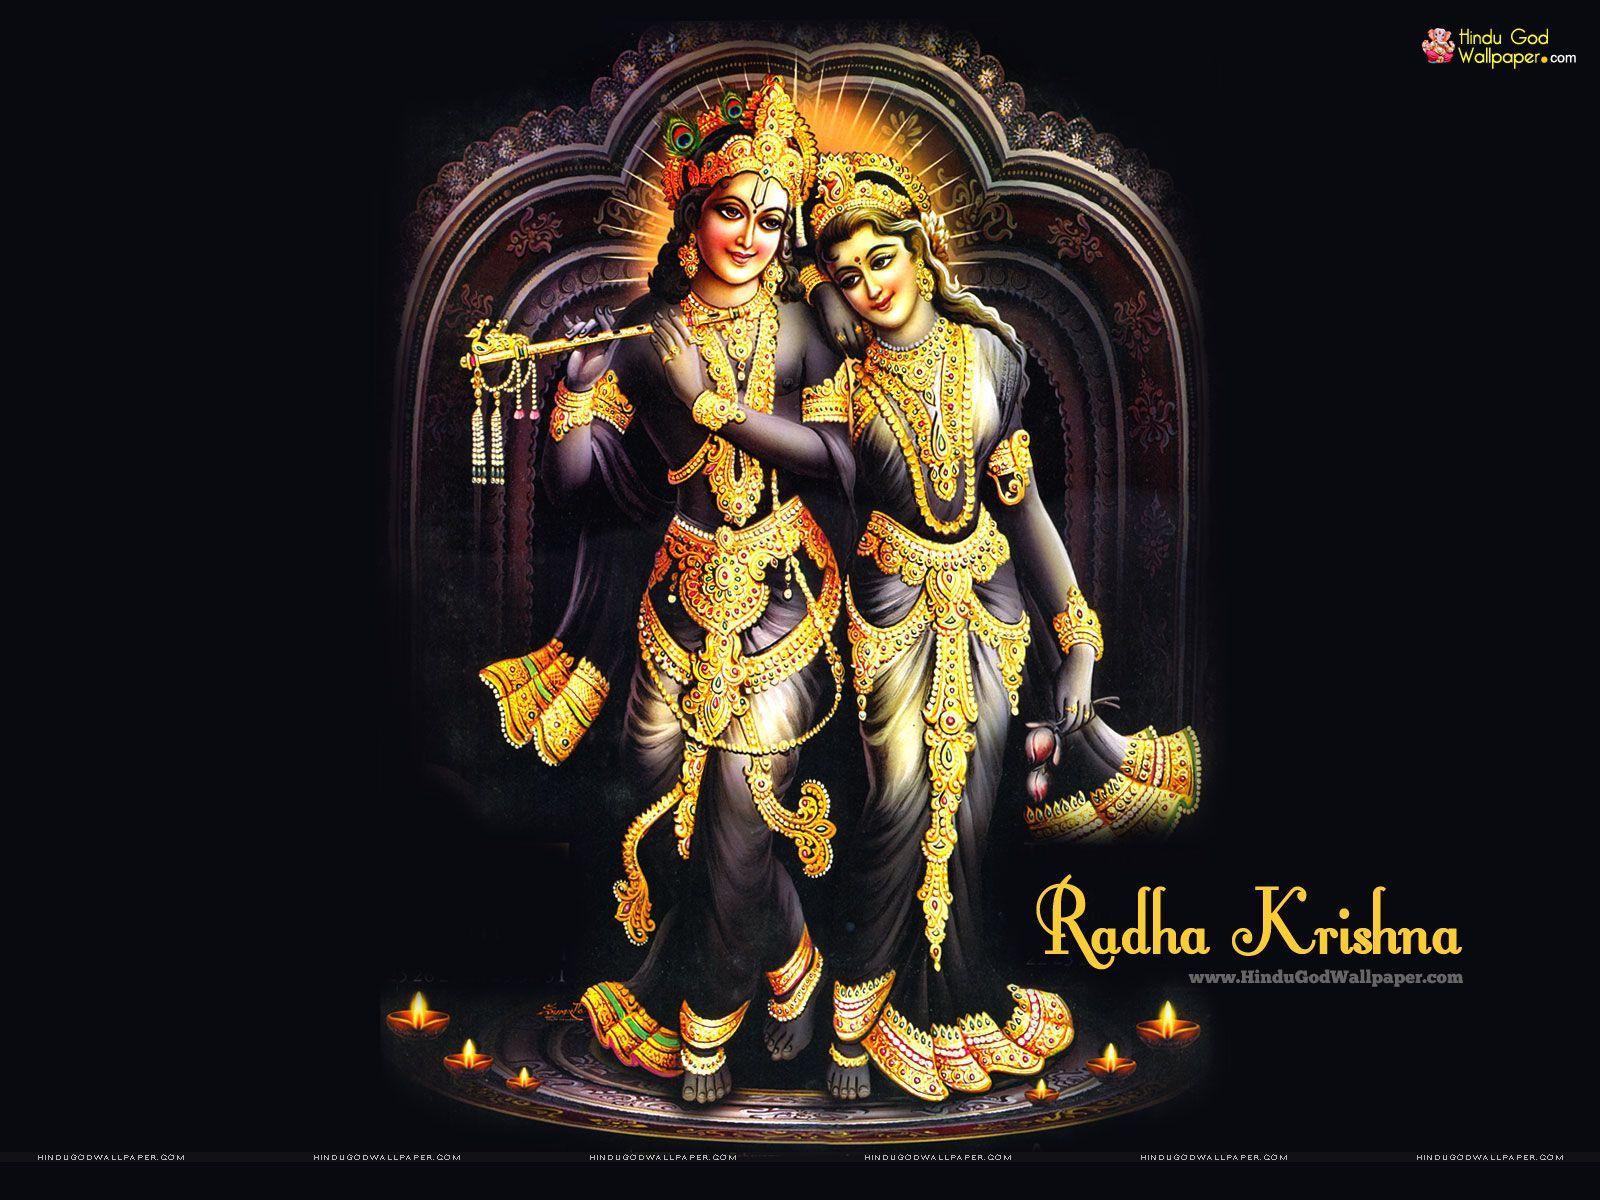 Radha Krishna Wallpaper HD Full Size 1600x1200px. Radha Krishna